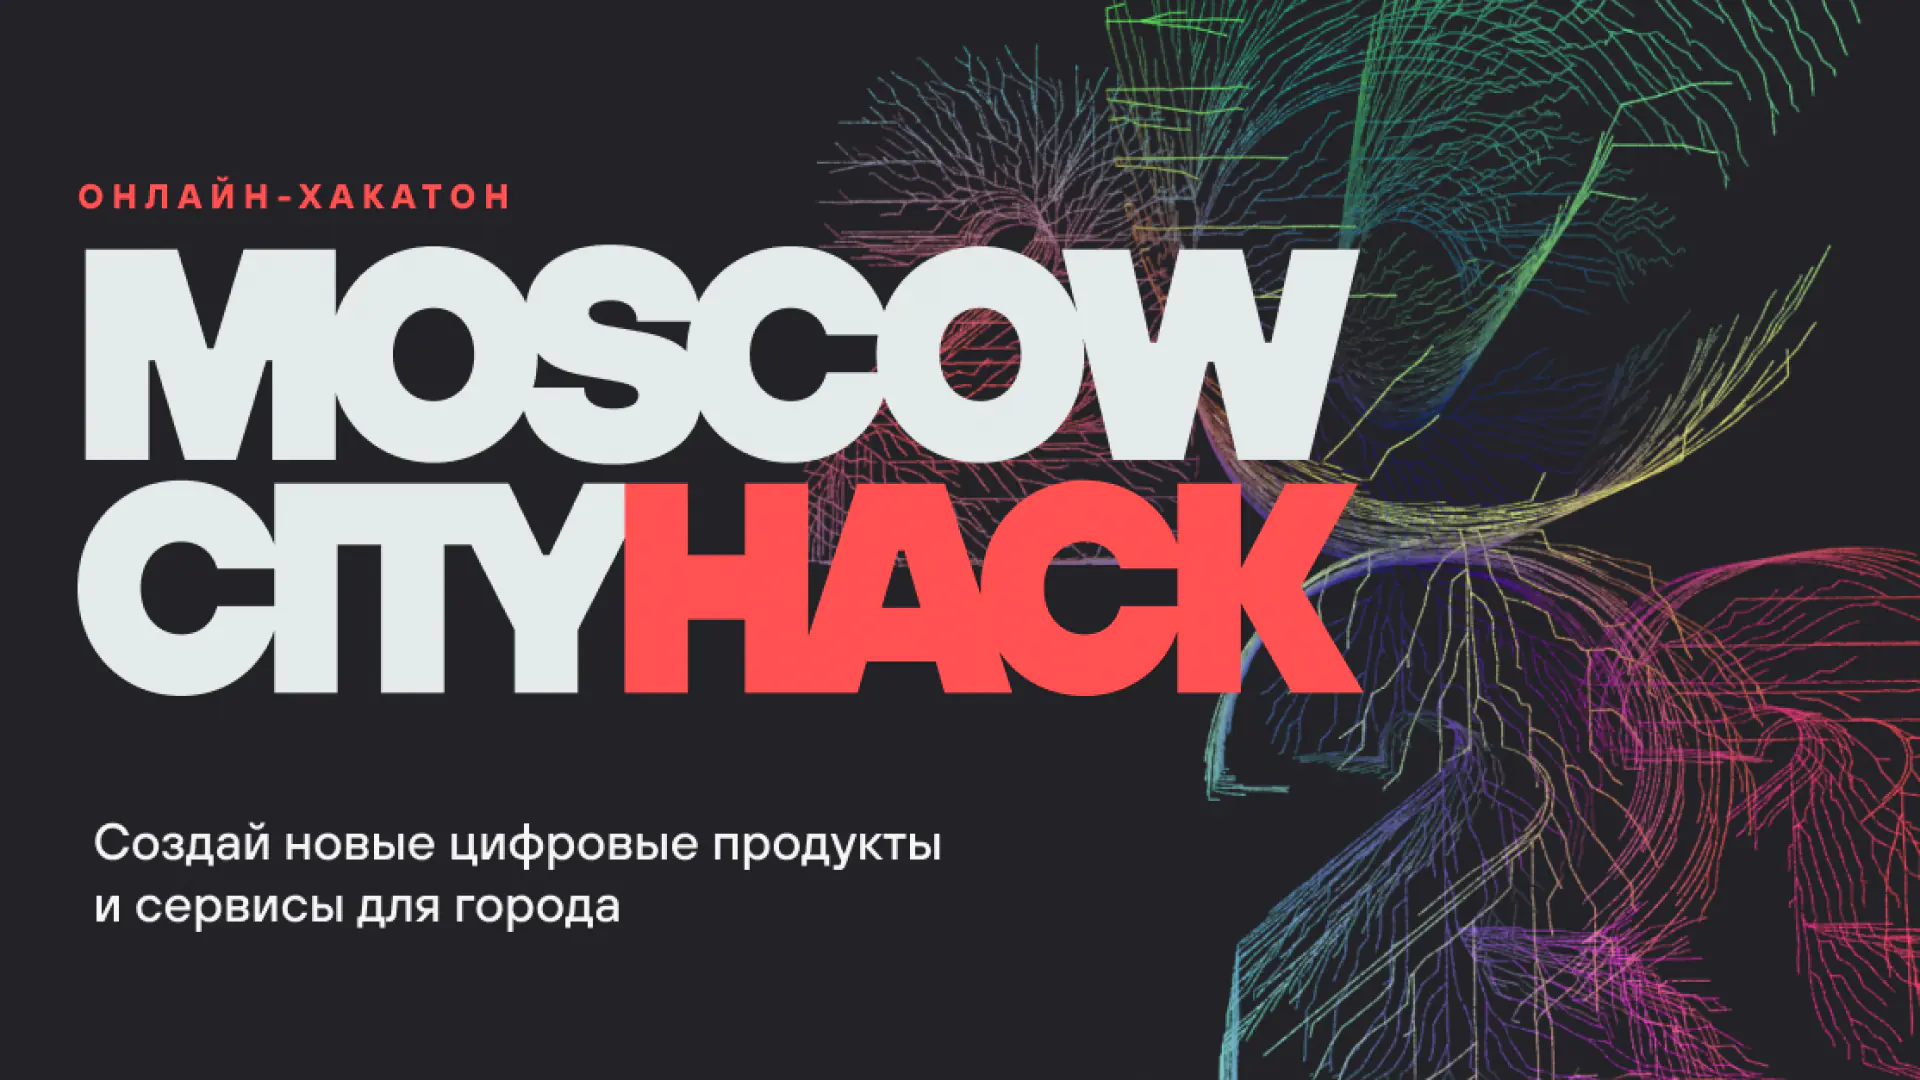 Moscow City Hack 2022 — raqamli mahsulotlar va xizmatlarni yaratishga qaratilgan onlayn hakaton musobaqasi; Mukofot jamgʻarmasi ₽3 400 000